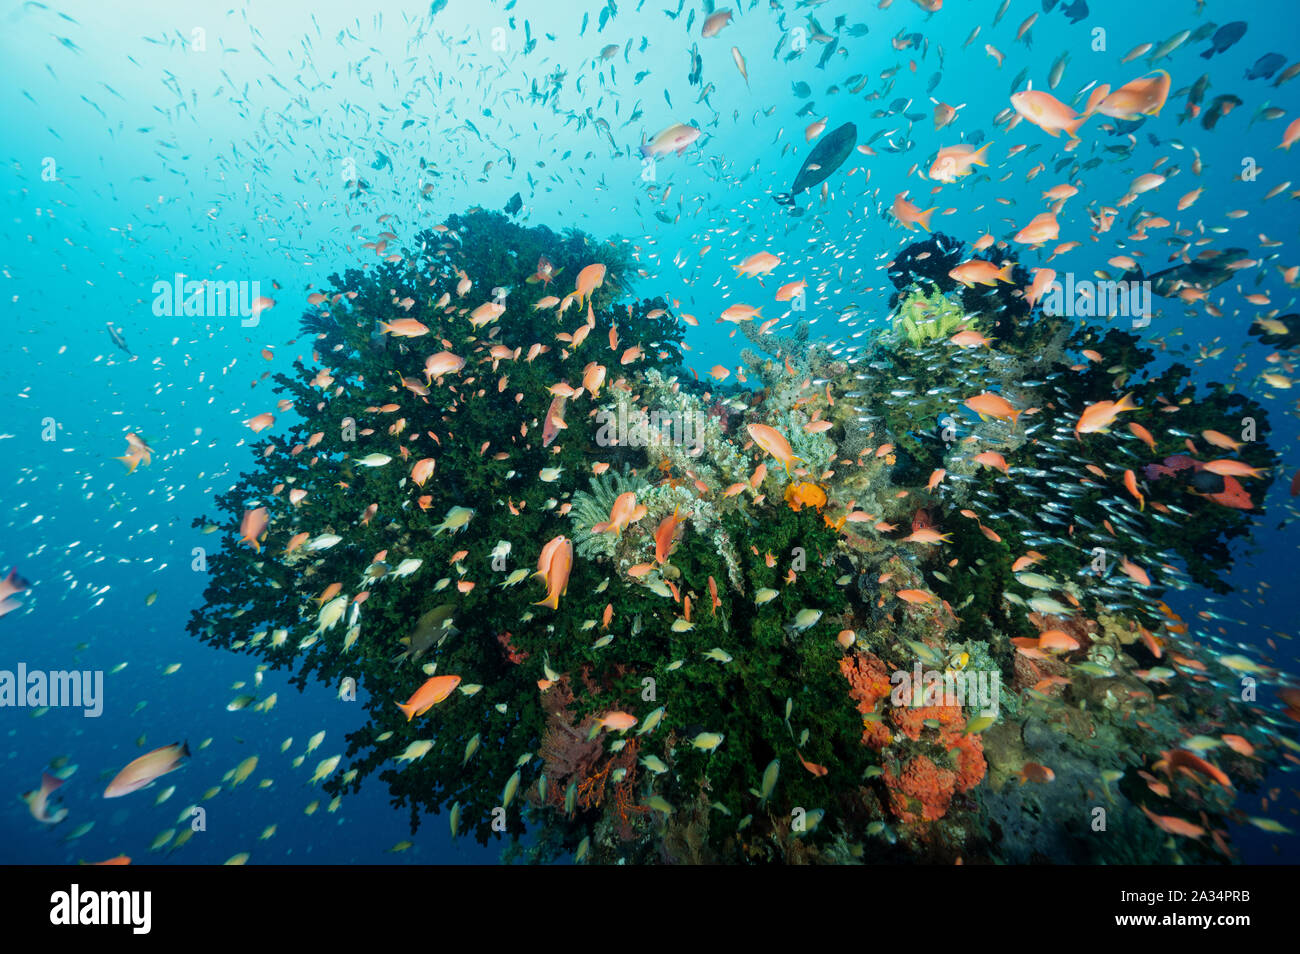 Reef scenic con anthiases, tubasterea coralli e crinoidi Sulawesi, Indonesia. Foto Stock